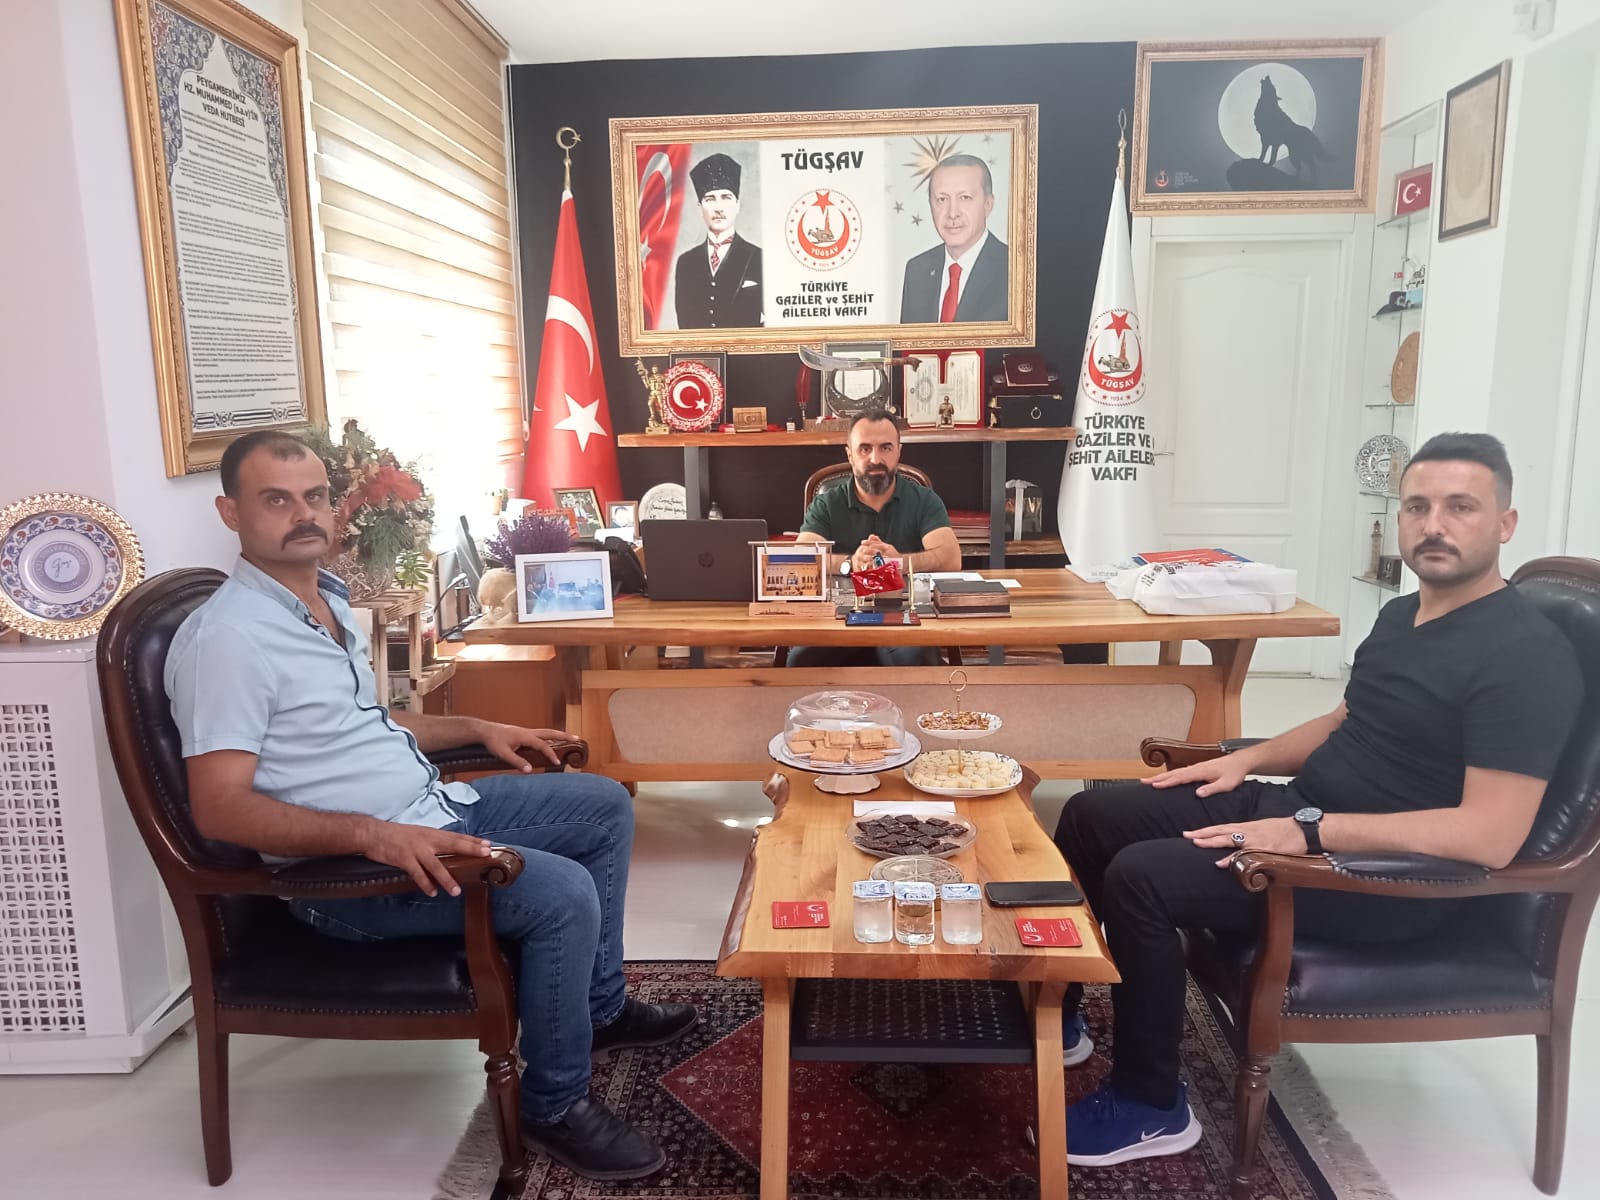 Osmaniye Şube Başkanımız Genel Merkezimizi ziyaret ederek yürüttükleri çalışmalar hakkında Genel Başkanımız Gazi Lokman AYLAR'a bilgilendirmede bulundu.  Özverili çalışmaları için Osmaniye Şubemize teşekkür eder, çalışmalarında muvaffakiyetler dileriz